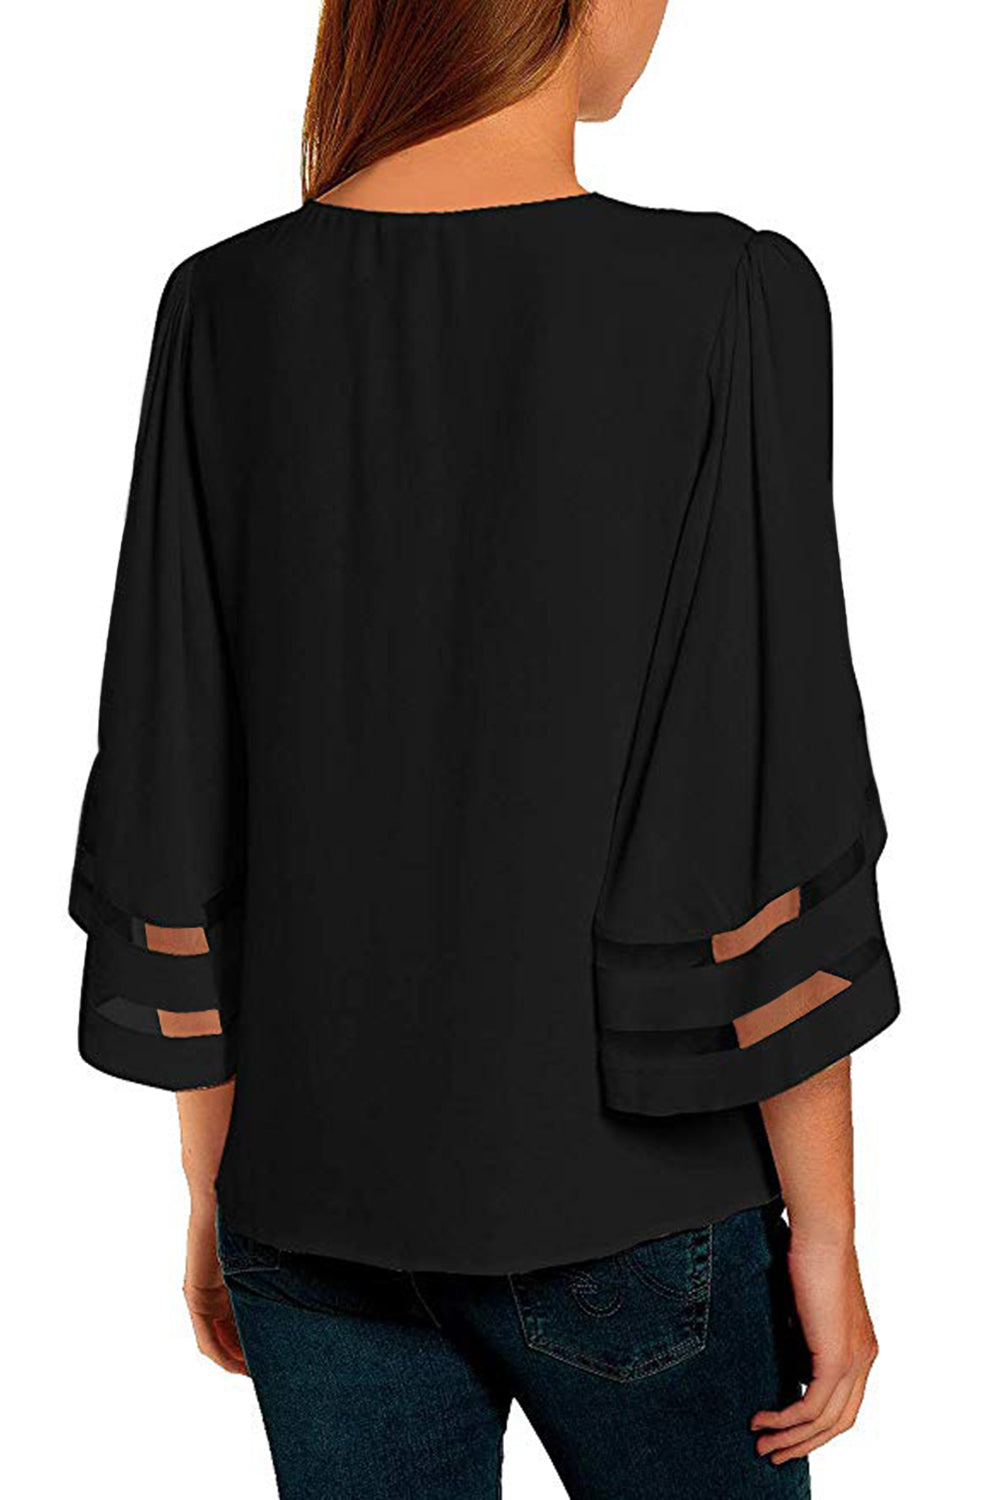 ΑΜΕΣΑ ΔΙΑΘΕΣΙΜΟ: μαύρο δαντελένιο μπλουζάκι με τούλι ALECIA BLACK